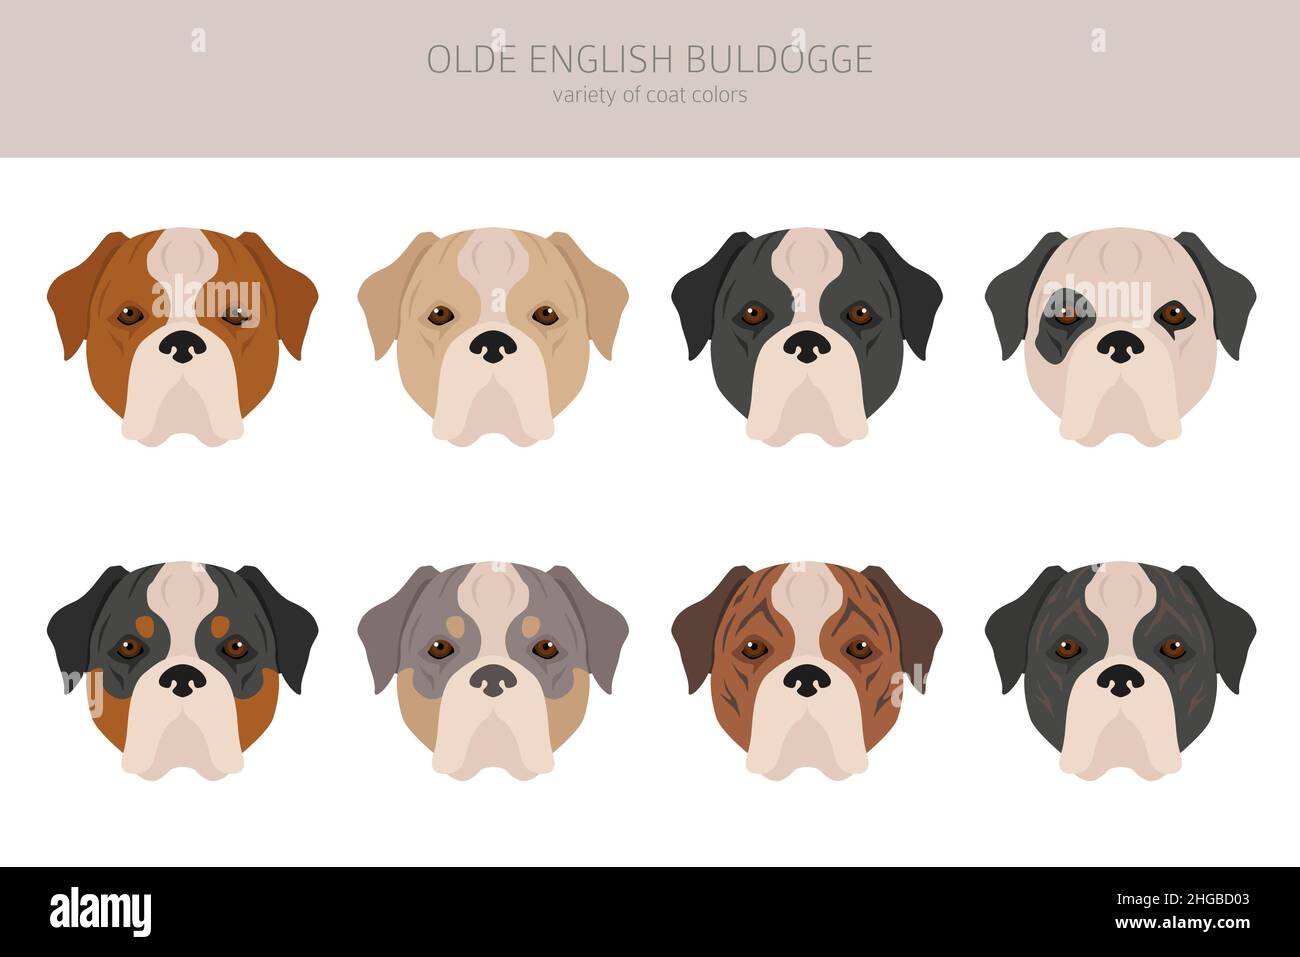 Olde inglese Bulldogge, Leavitt Bulldog Clipart. Pose diverse, colori del cappotto impostati. Illustrazione vettoriale Illustrazione Vettoriale